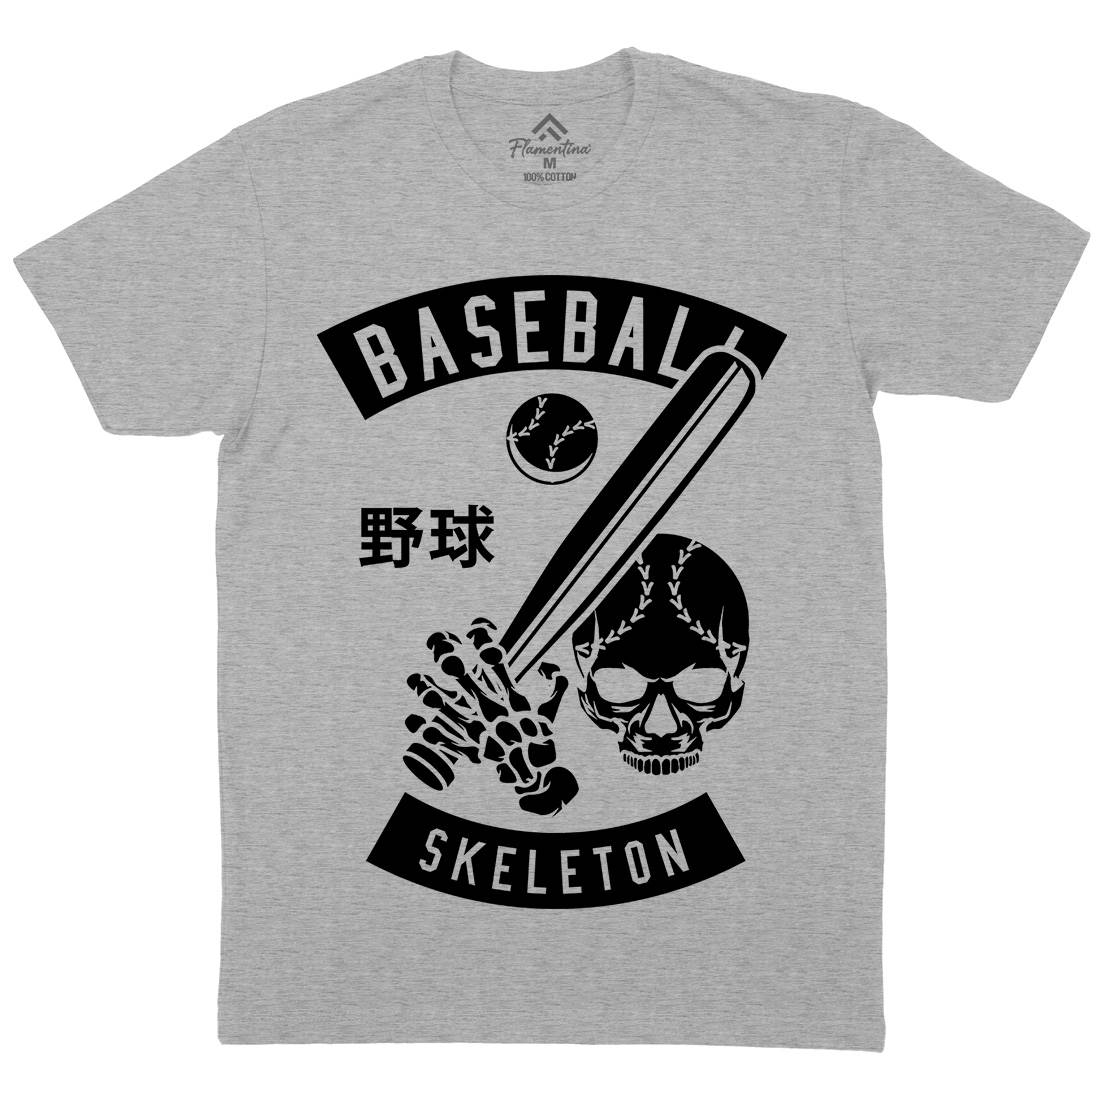 Baseball Skeleton Mens Crew Neck T-Shirt Sport B489